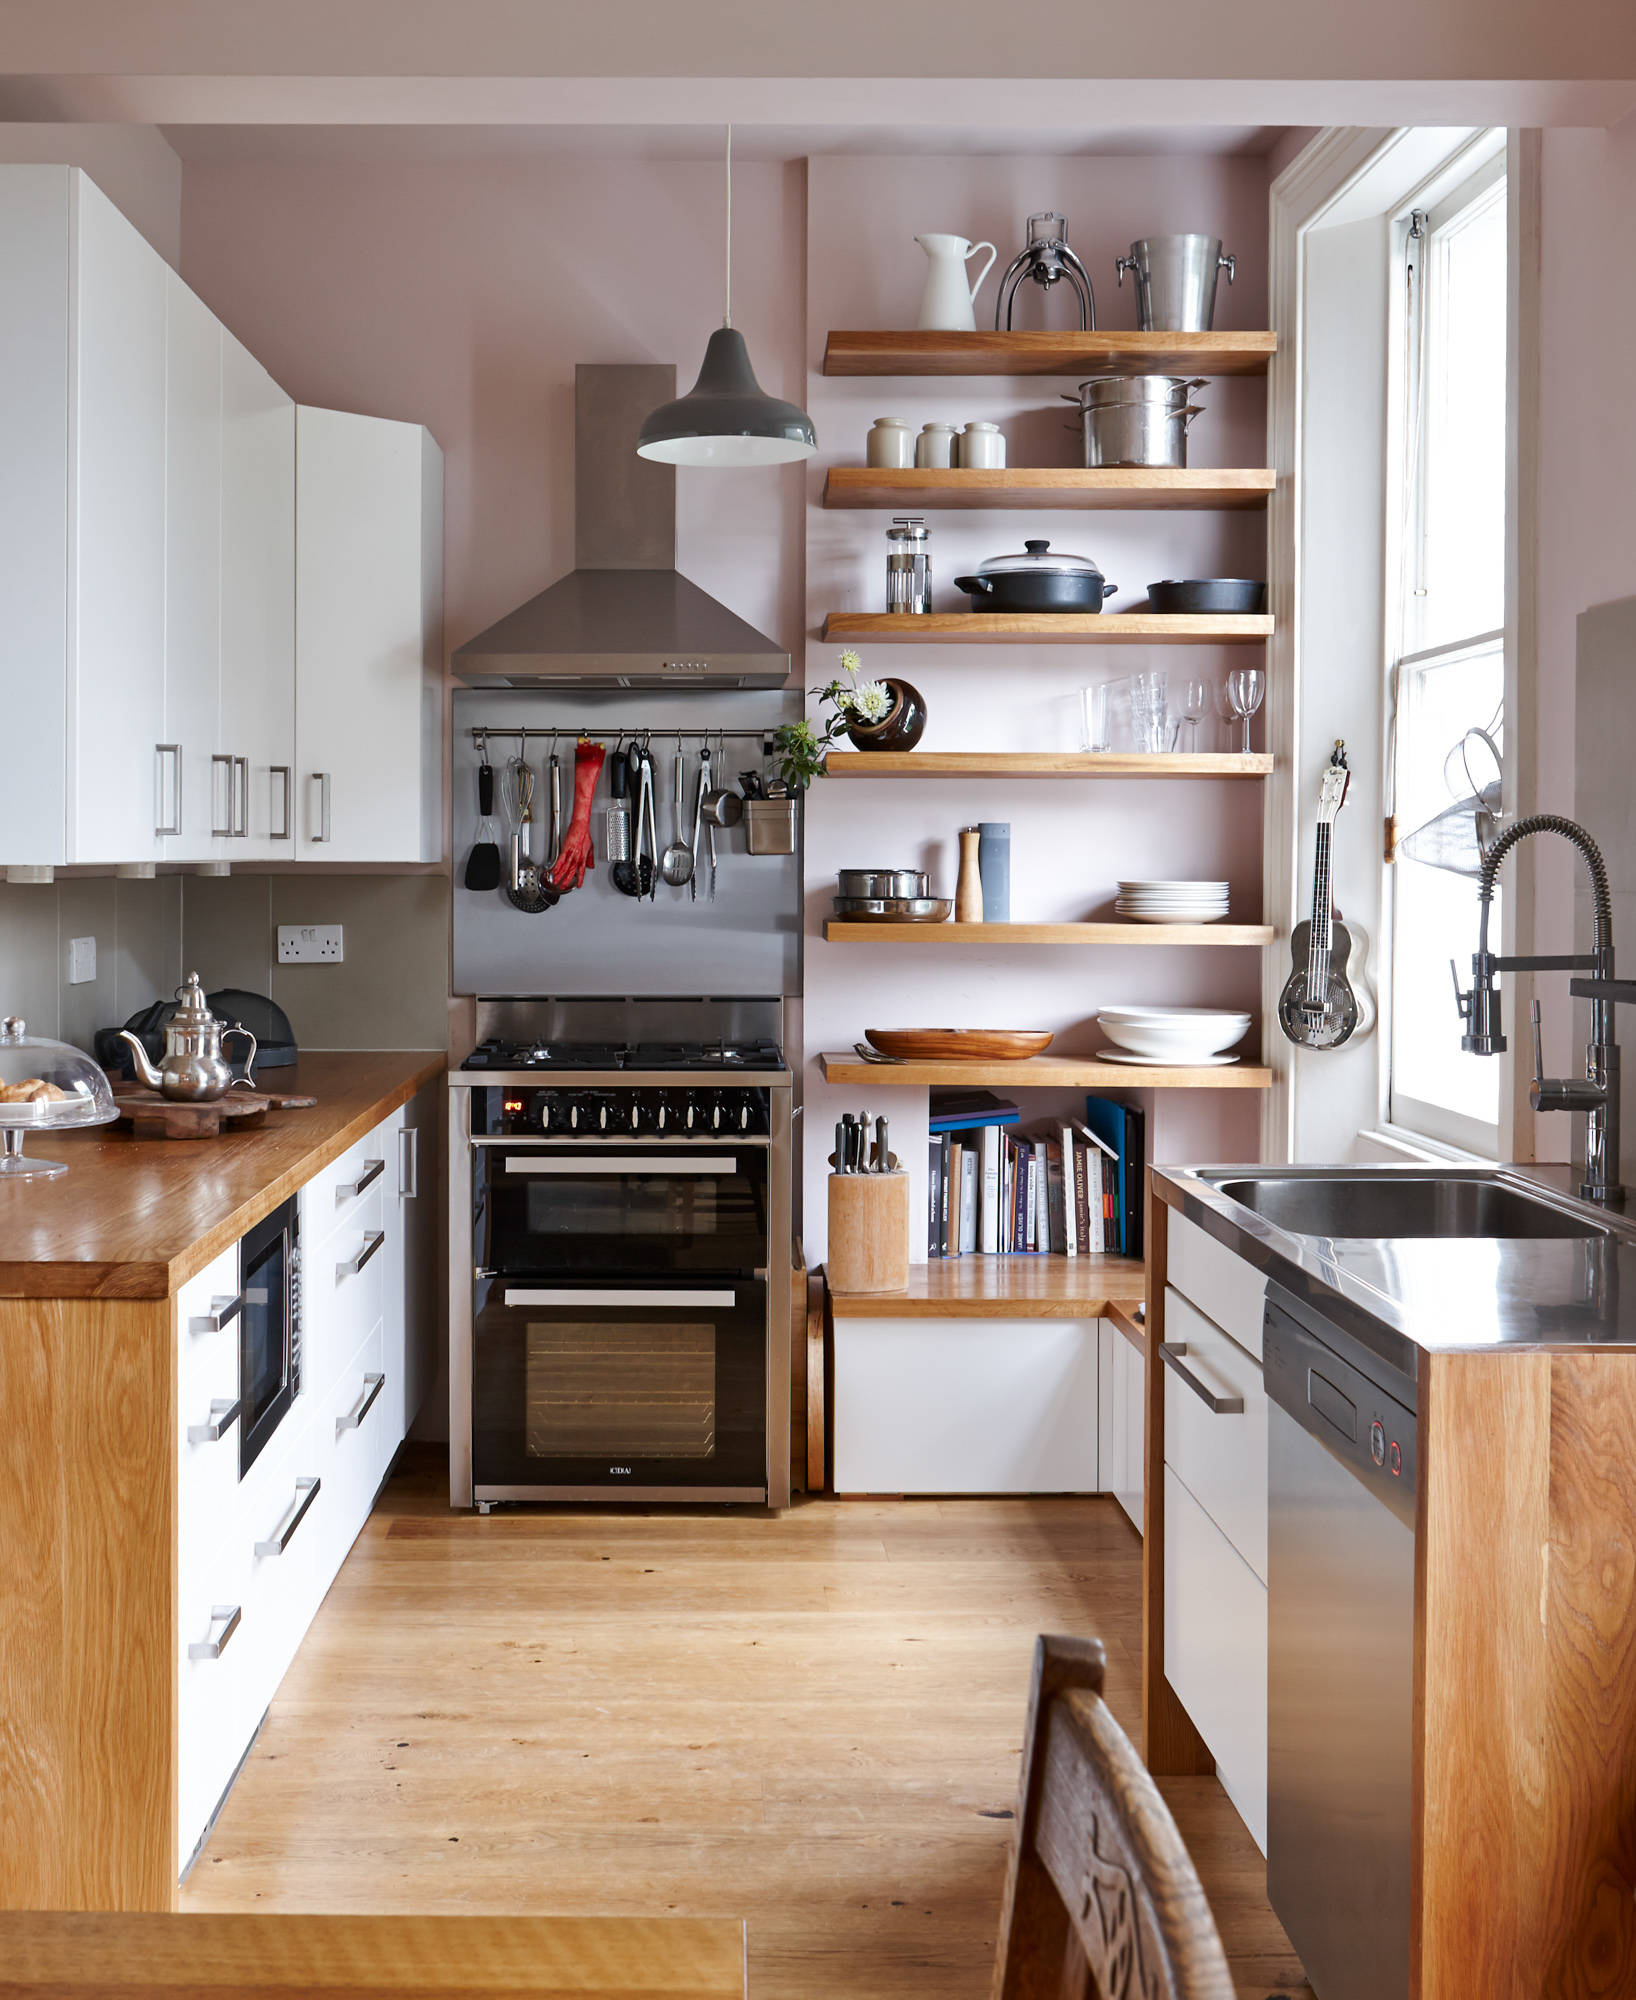 Dù không gian phòng bếp rộng rãi hay chật hẹp thì ý tưởng sử dụng gam màu trắng kết hợp nội thất gỗ vẫn vô cùng hoàn hảo. Ở đây, những chiếc kệ mở giúp bếp gọn gàng hơn, lại đẹp mắt như một chiếc tủ trưng bày vậy.